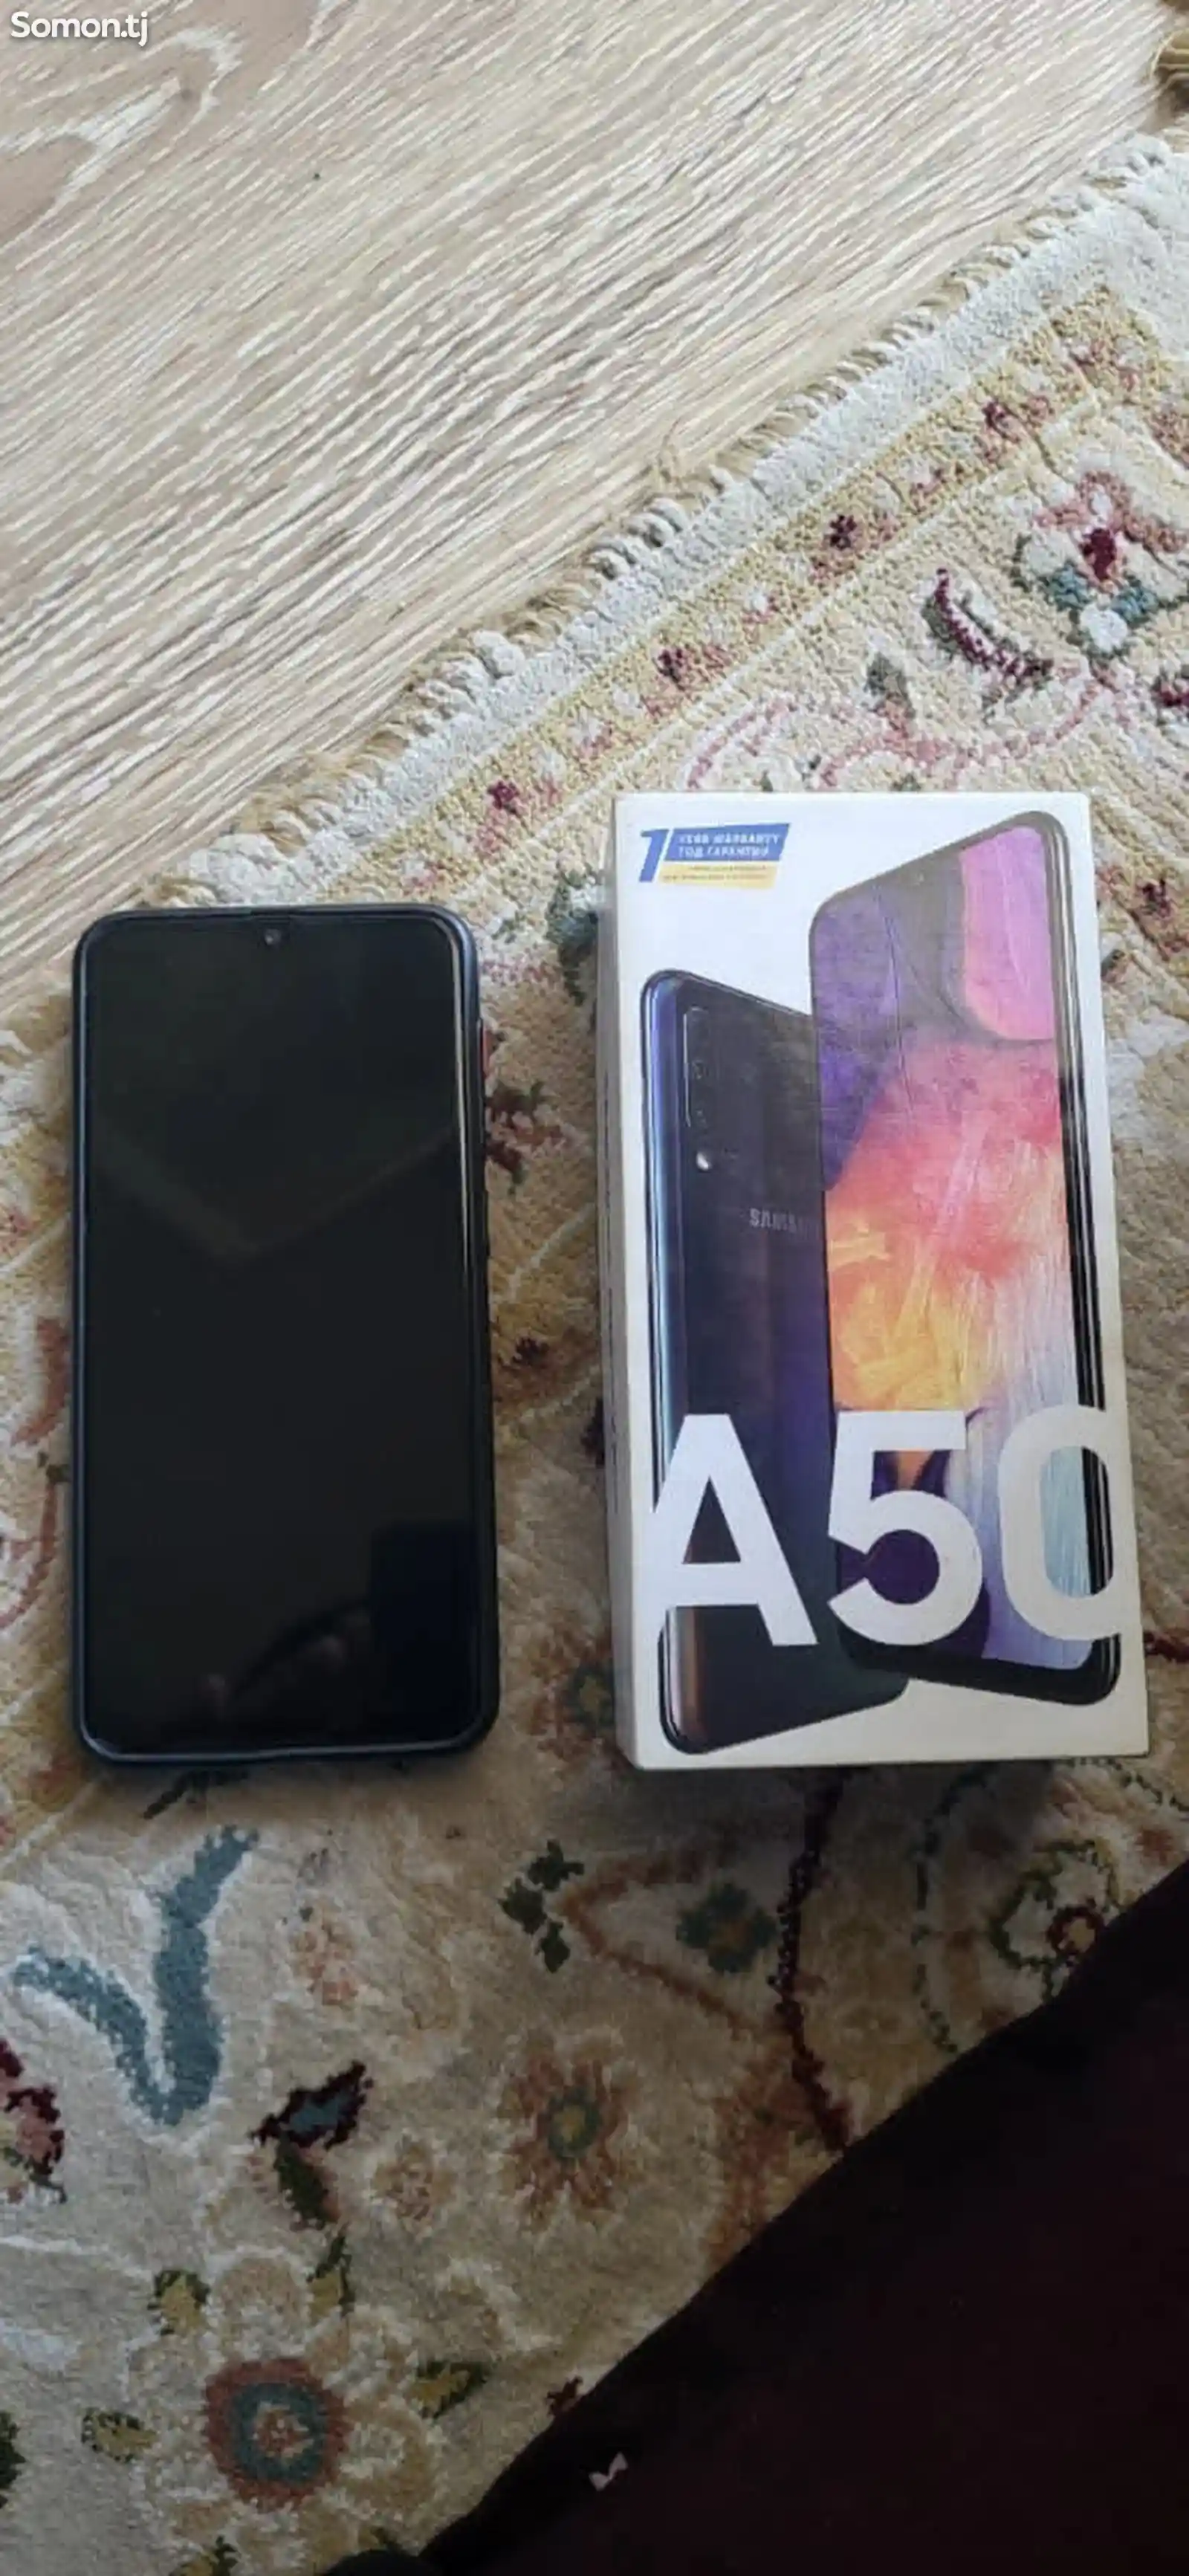 Samsung Galaxy A50 4/64Gb duos black-5